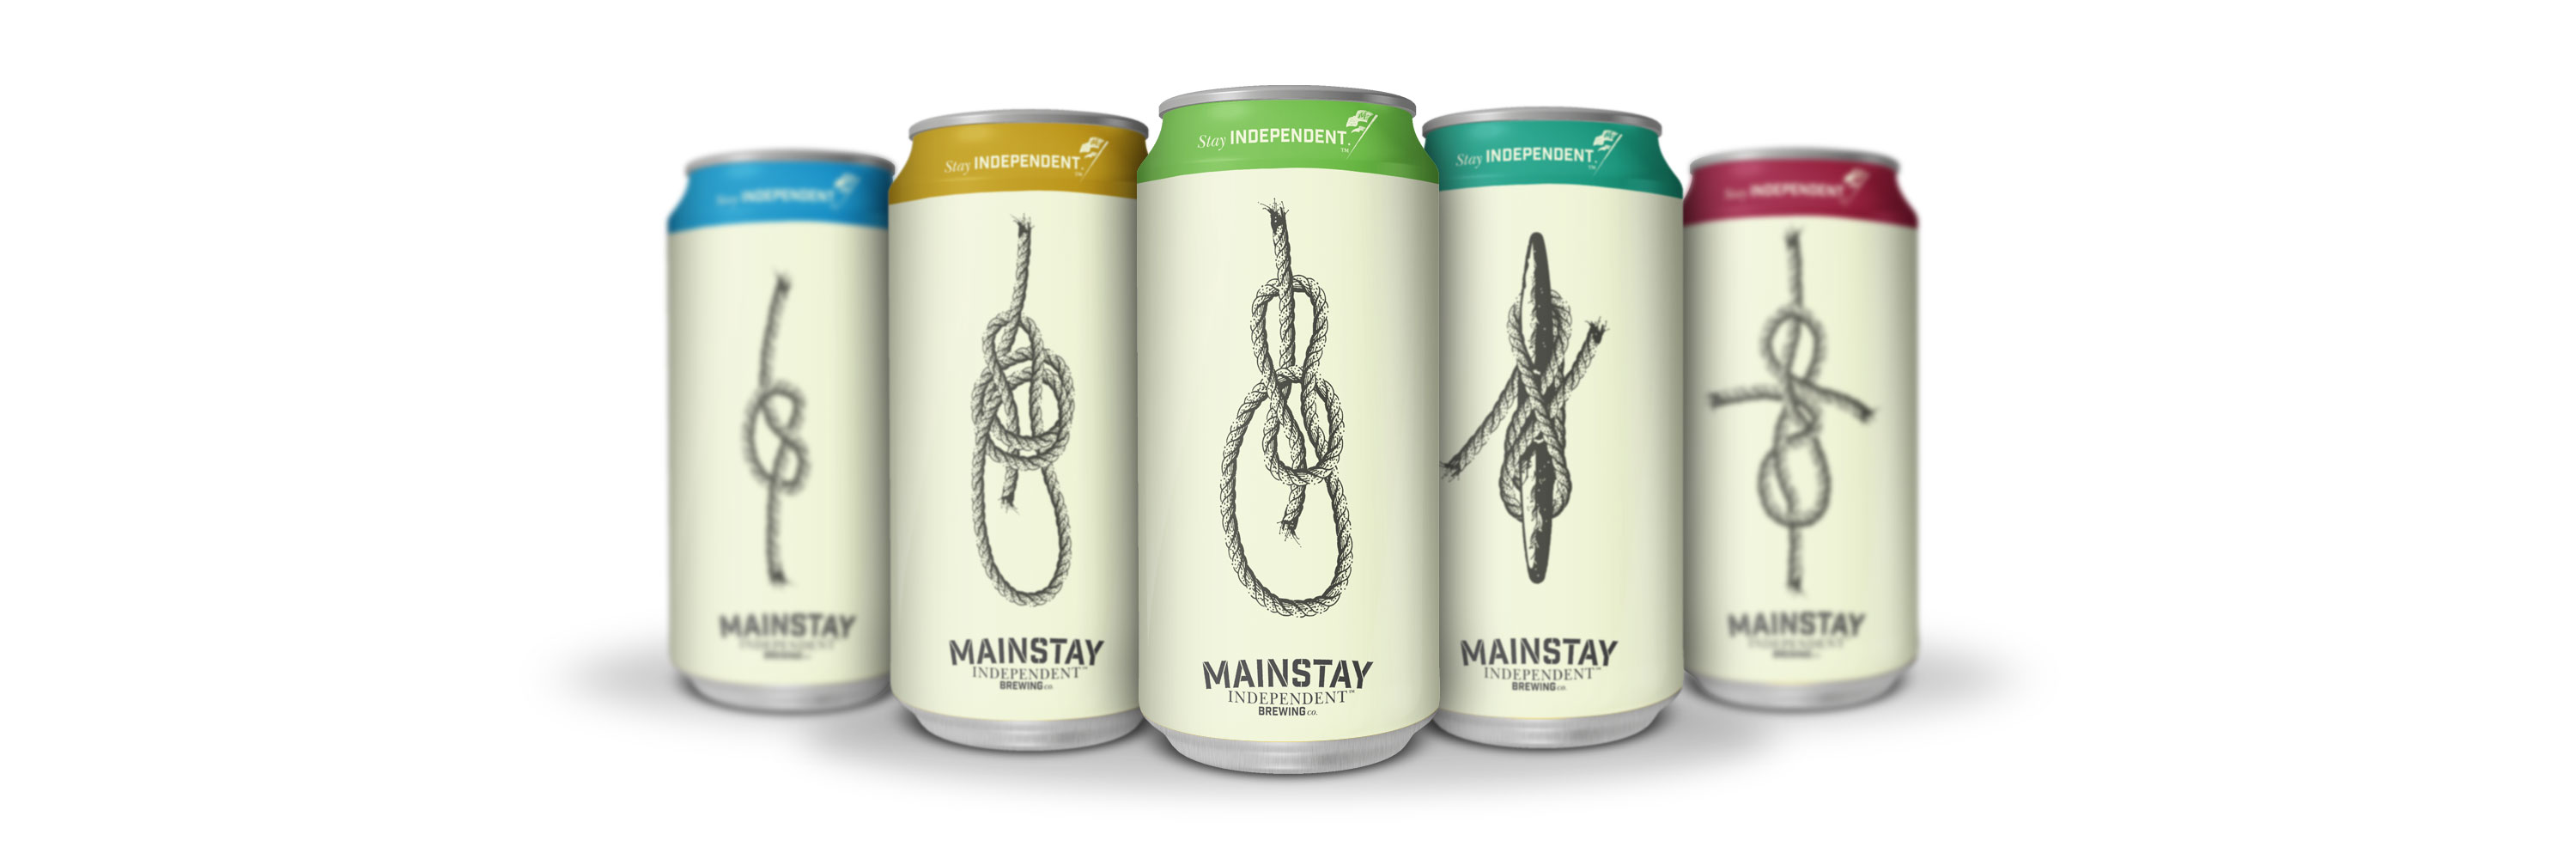 Mainstay Beer Series Packaging Design